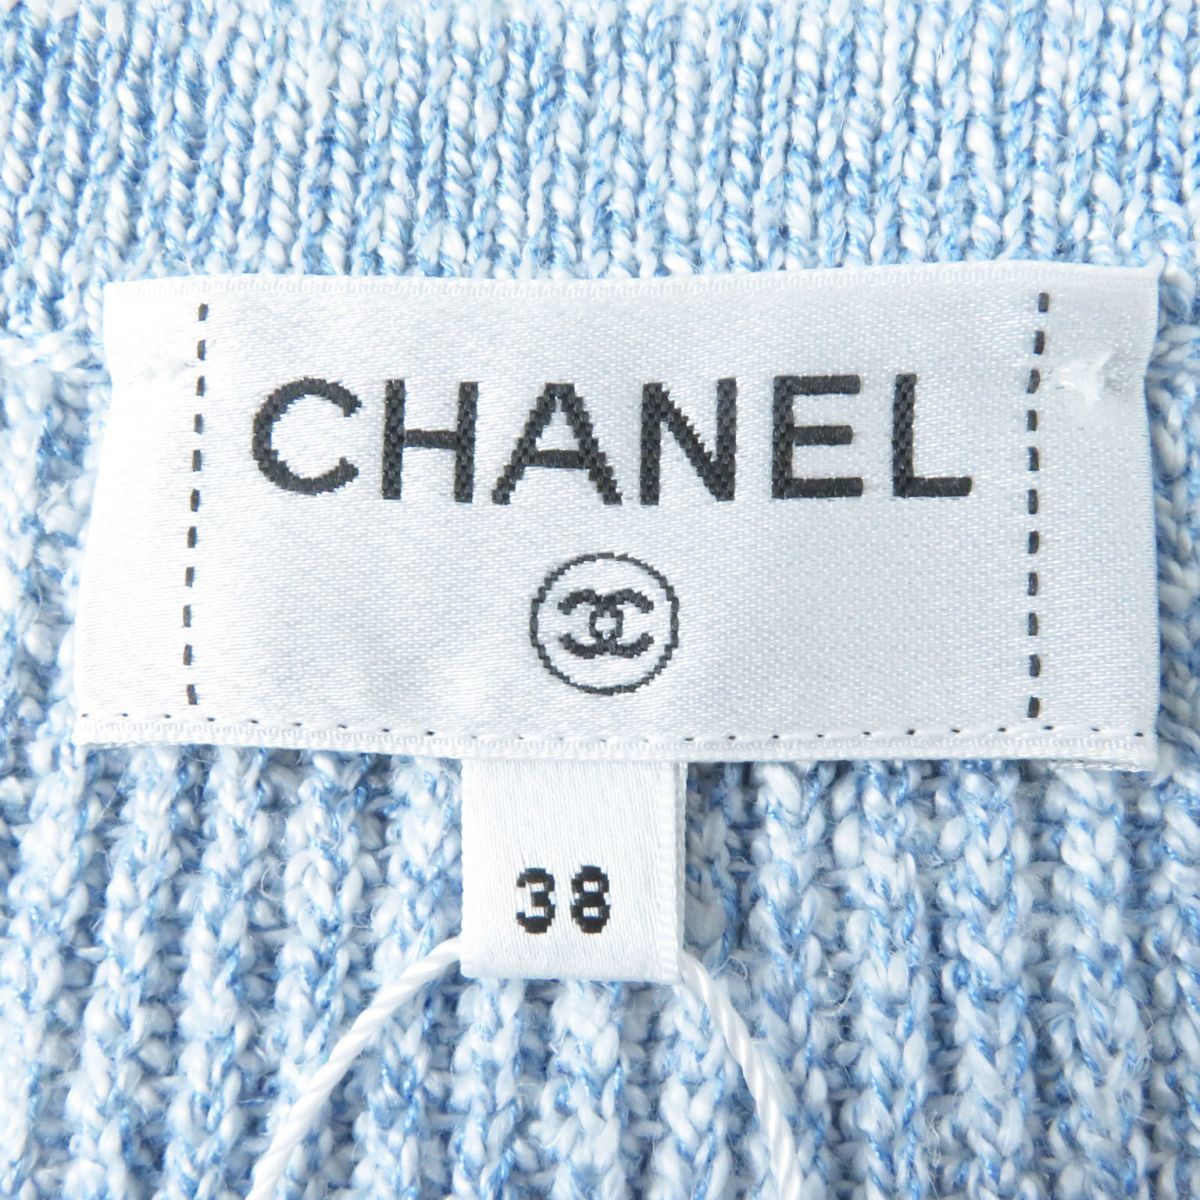  не использовался товар * сделано в Италии CHANEL Chanel 23P P74623 женский стразы оборудование орнамент лев кнопка имеется длинный рукав вязаный кардиган бледно-голубой 38 с биркой 